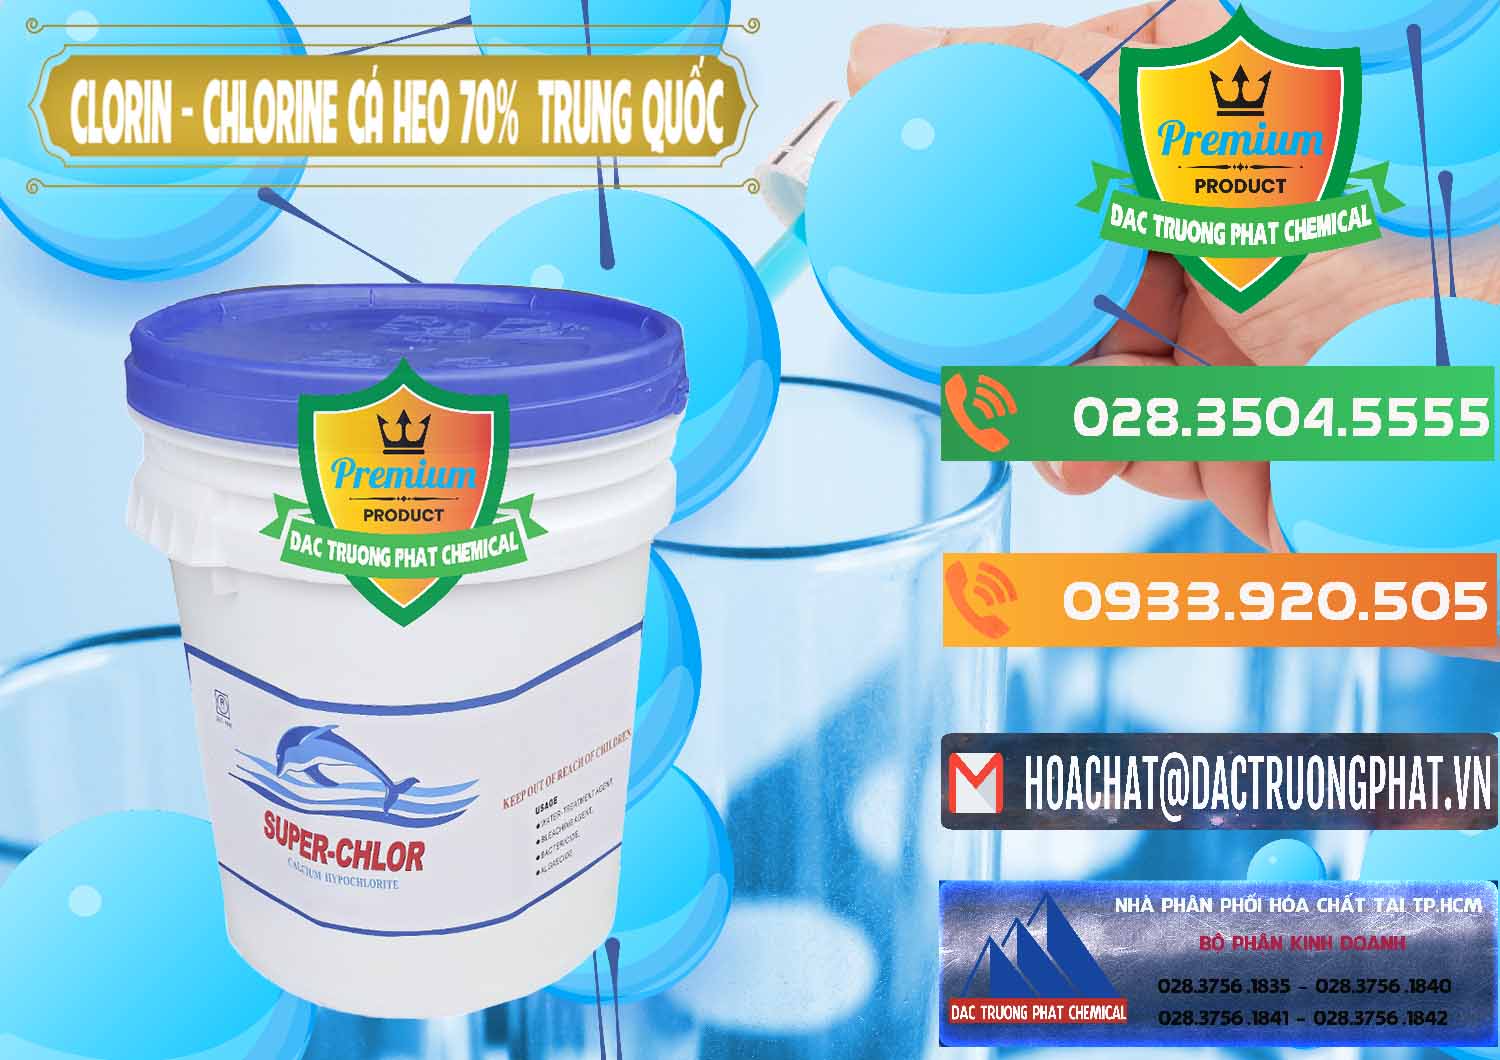 Cty chuyên kinh doanh _ bán Clorin - Chlorine Cá Heo 70% Super Chlor Nắp Xanh Trung Quốc China - 0209 - Công ty phân phối _ cung cấp hóa chất tại TP.HCM - hoachatxulynuoc.com.vn